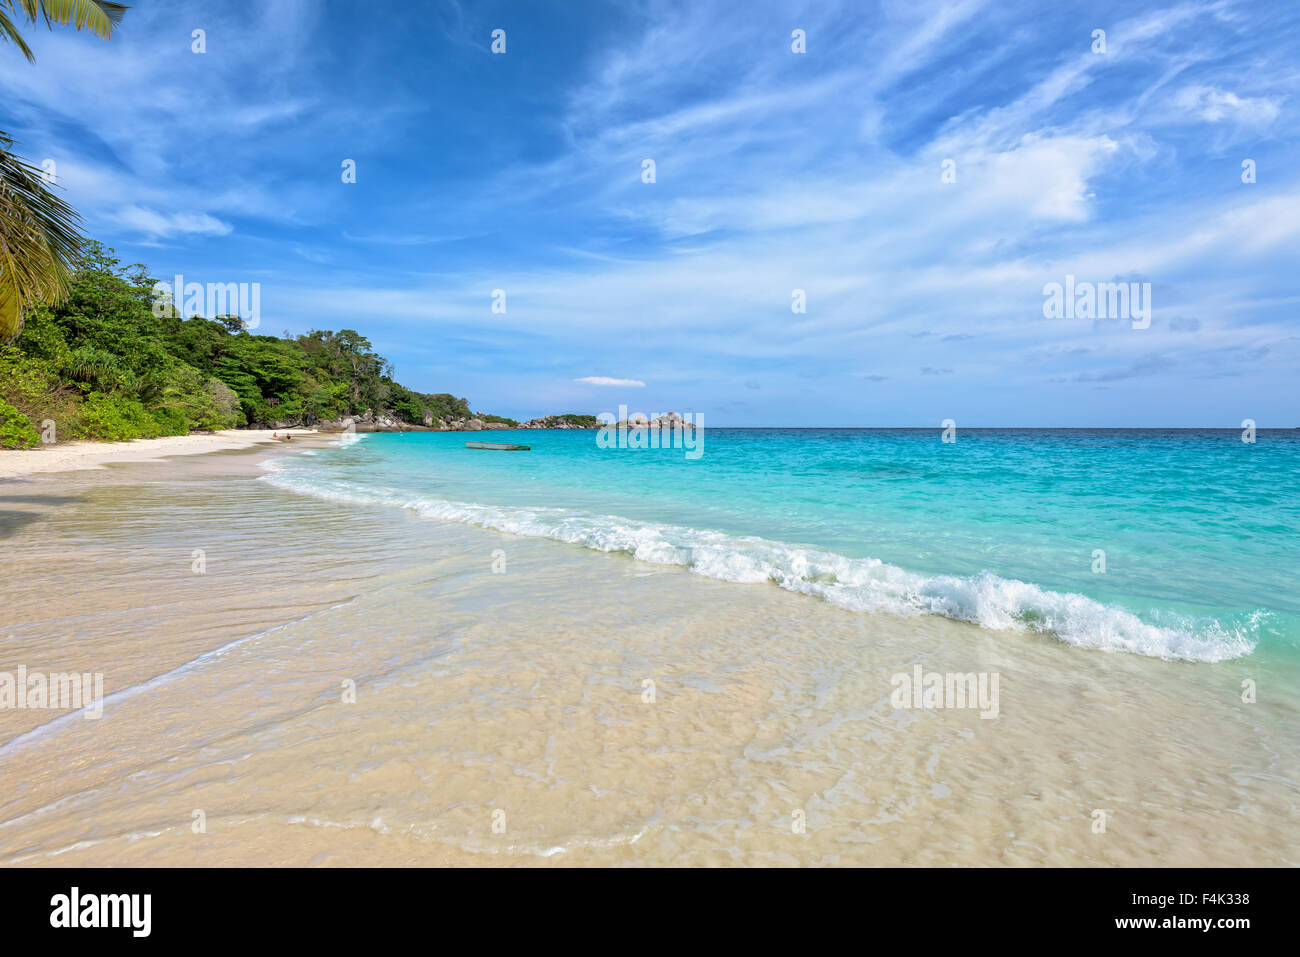 Lo splendido paesaggio di cielo blu mare di sabbia bianca e onde sulla spiaggia durante il periodo estivo a Koh Miang isola in Mu Ko Similan Foto Stock